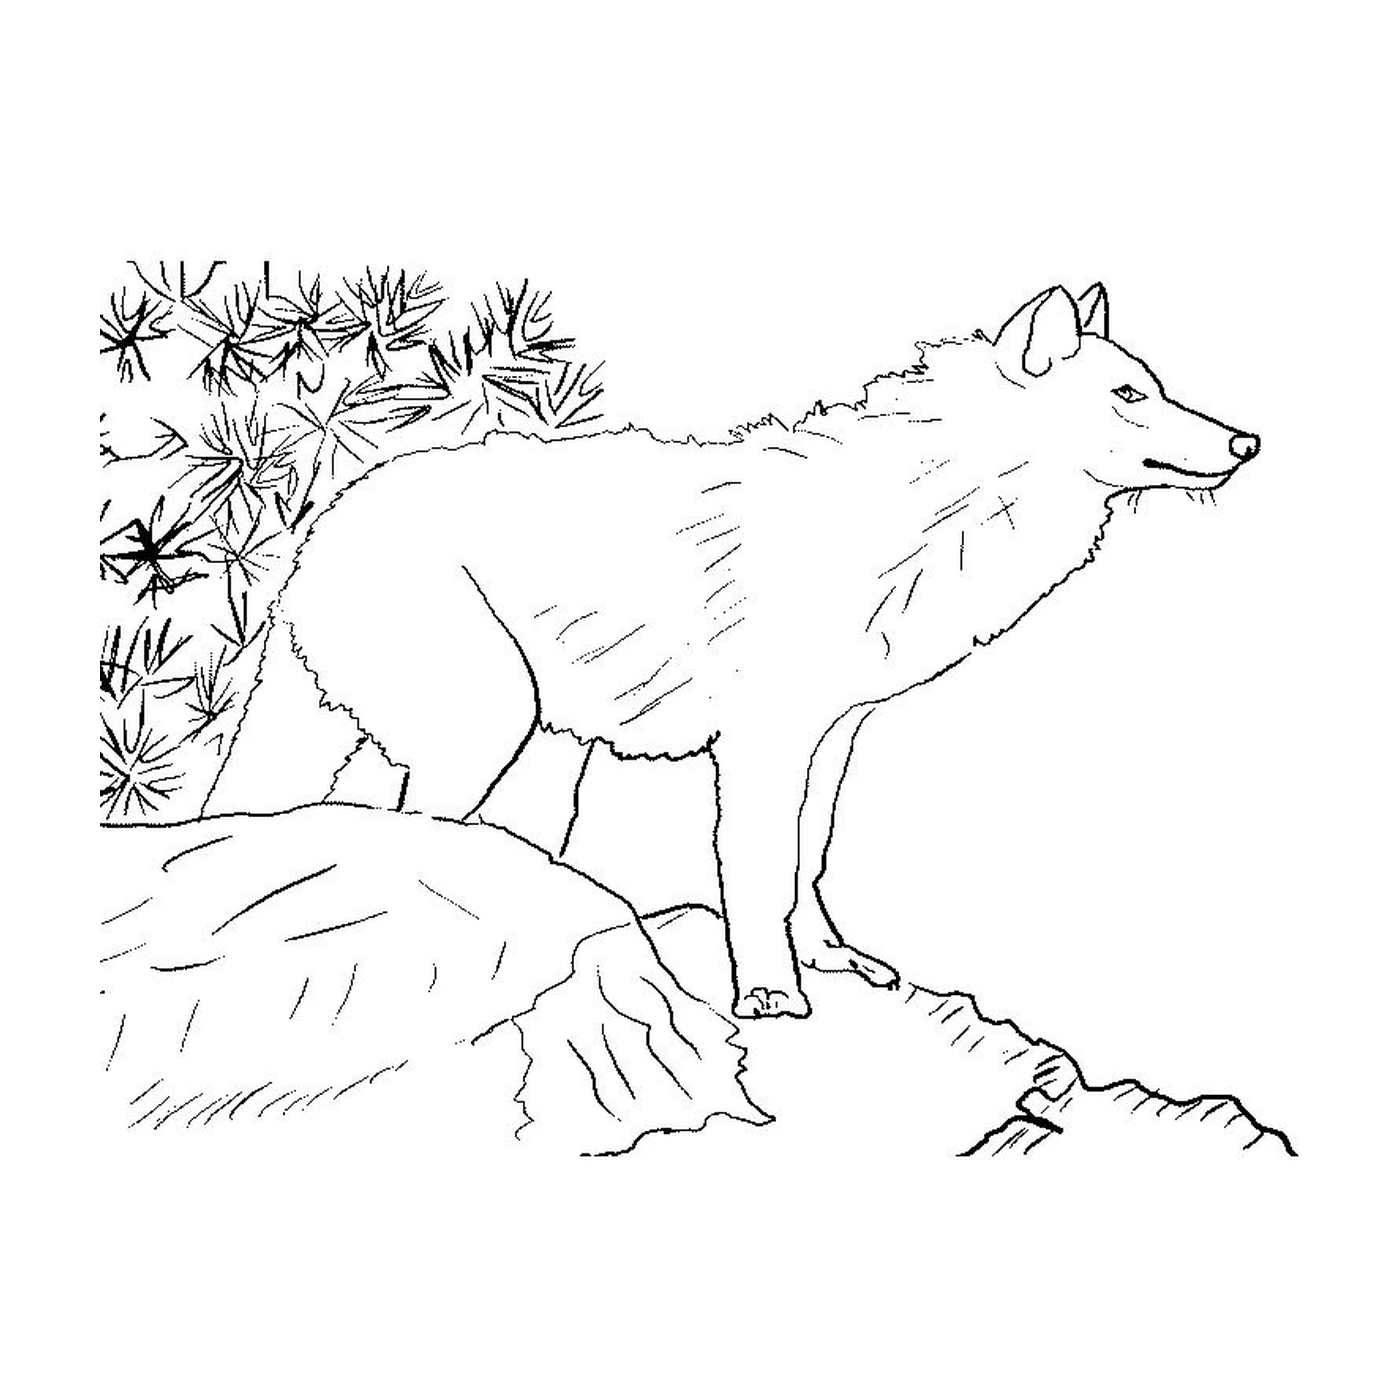  पहाड़ी पर एक भेड़िया खड़ा है 